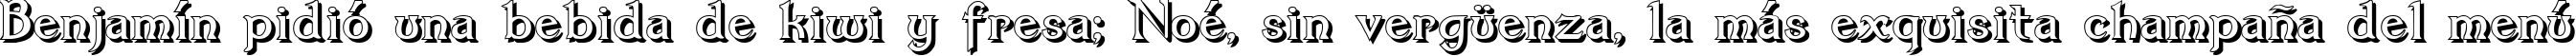 Пример написания шрифтом Dumbledor 3 Shadow текста на испанском